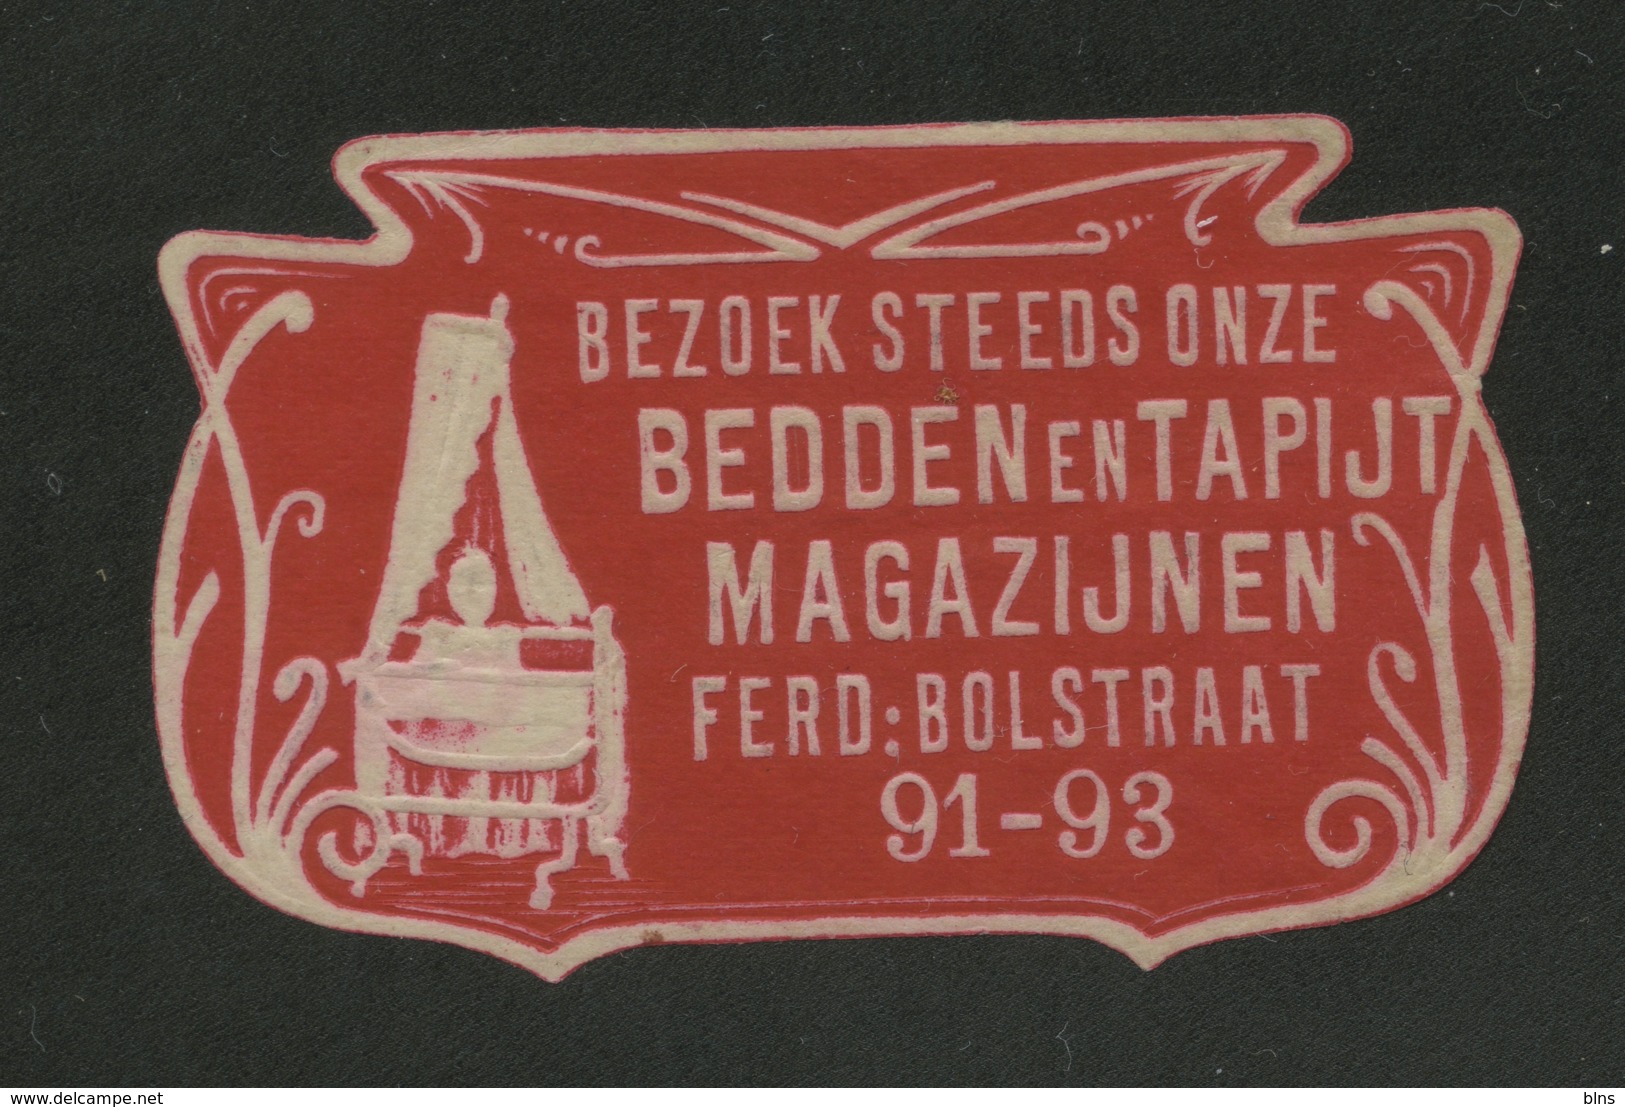 Bezoek Steeds Onze Bedden En Tapijt Magazijnen - Ferd Bolstraat 91-93 - Cinderellas